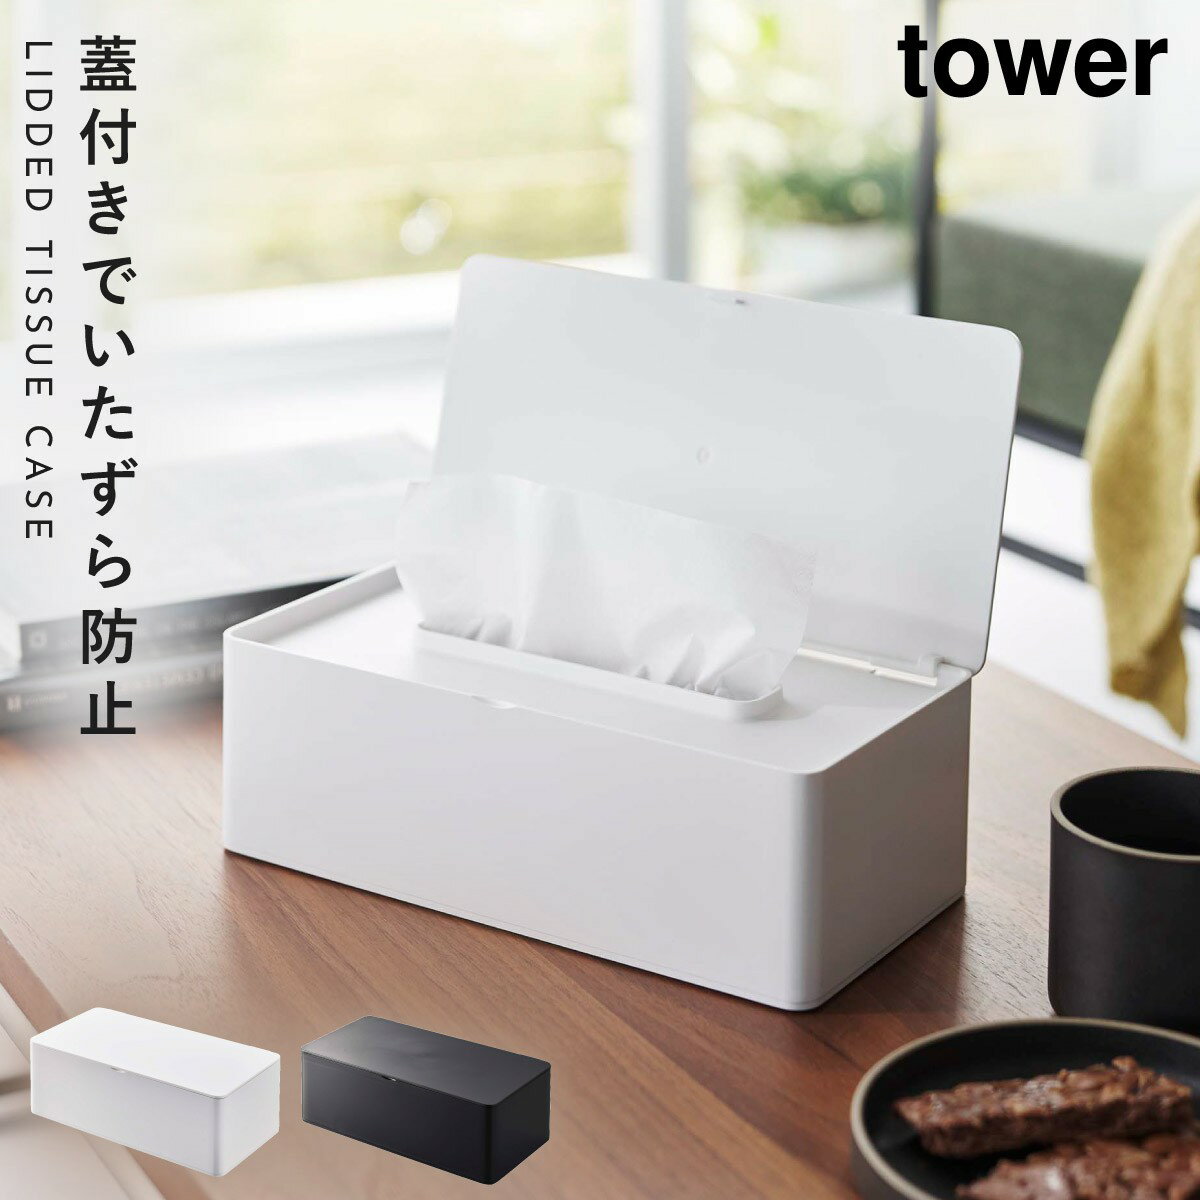 ティッシュケース ふた付き タワー 山崎実業 ホワイト ブラック 白 黒 蓋付きティッシュケース タワー レギュラーサイズ